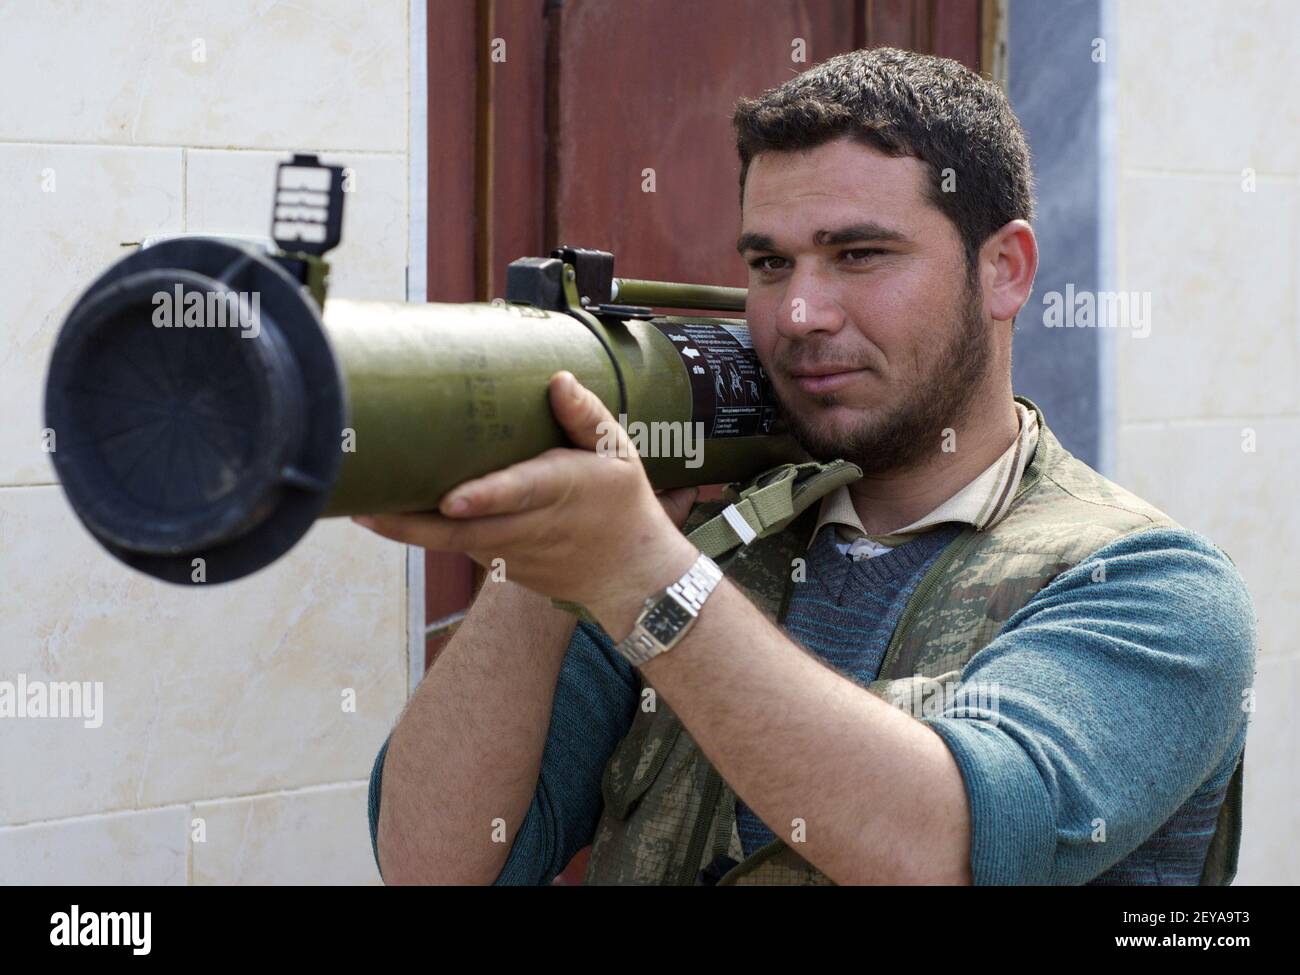 27 févr. 2013 - Kfar Nbouda, - UN membre de la Brigade Nasr, un groupe rebelle syrien, inspecte un lanceur de grenades propulsé par une fusée récemment arrivé à Kfar Nbouda, Syrie, le 27 février 2013. Crédit photo: David Enders/MCT/Sipa USA Banque D'Images